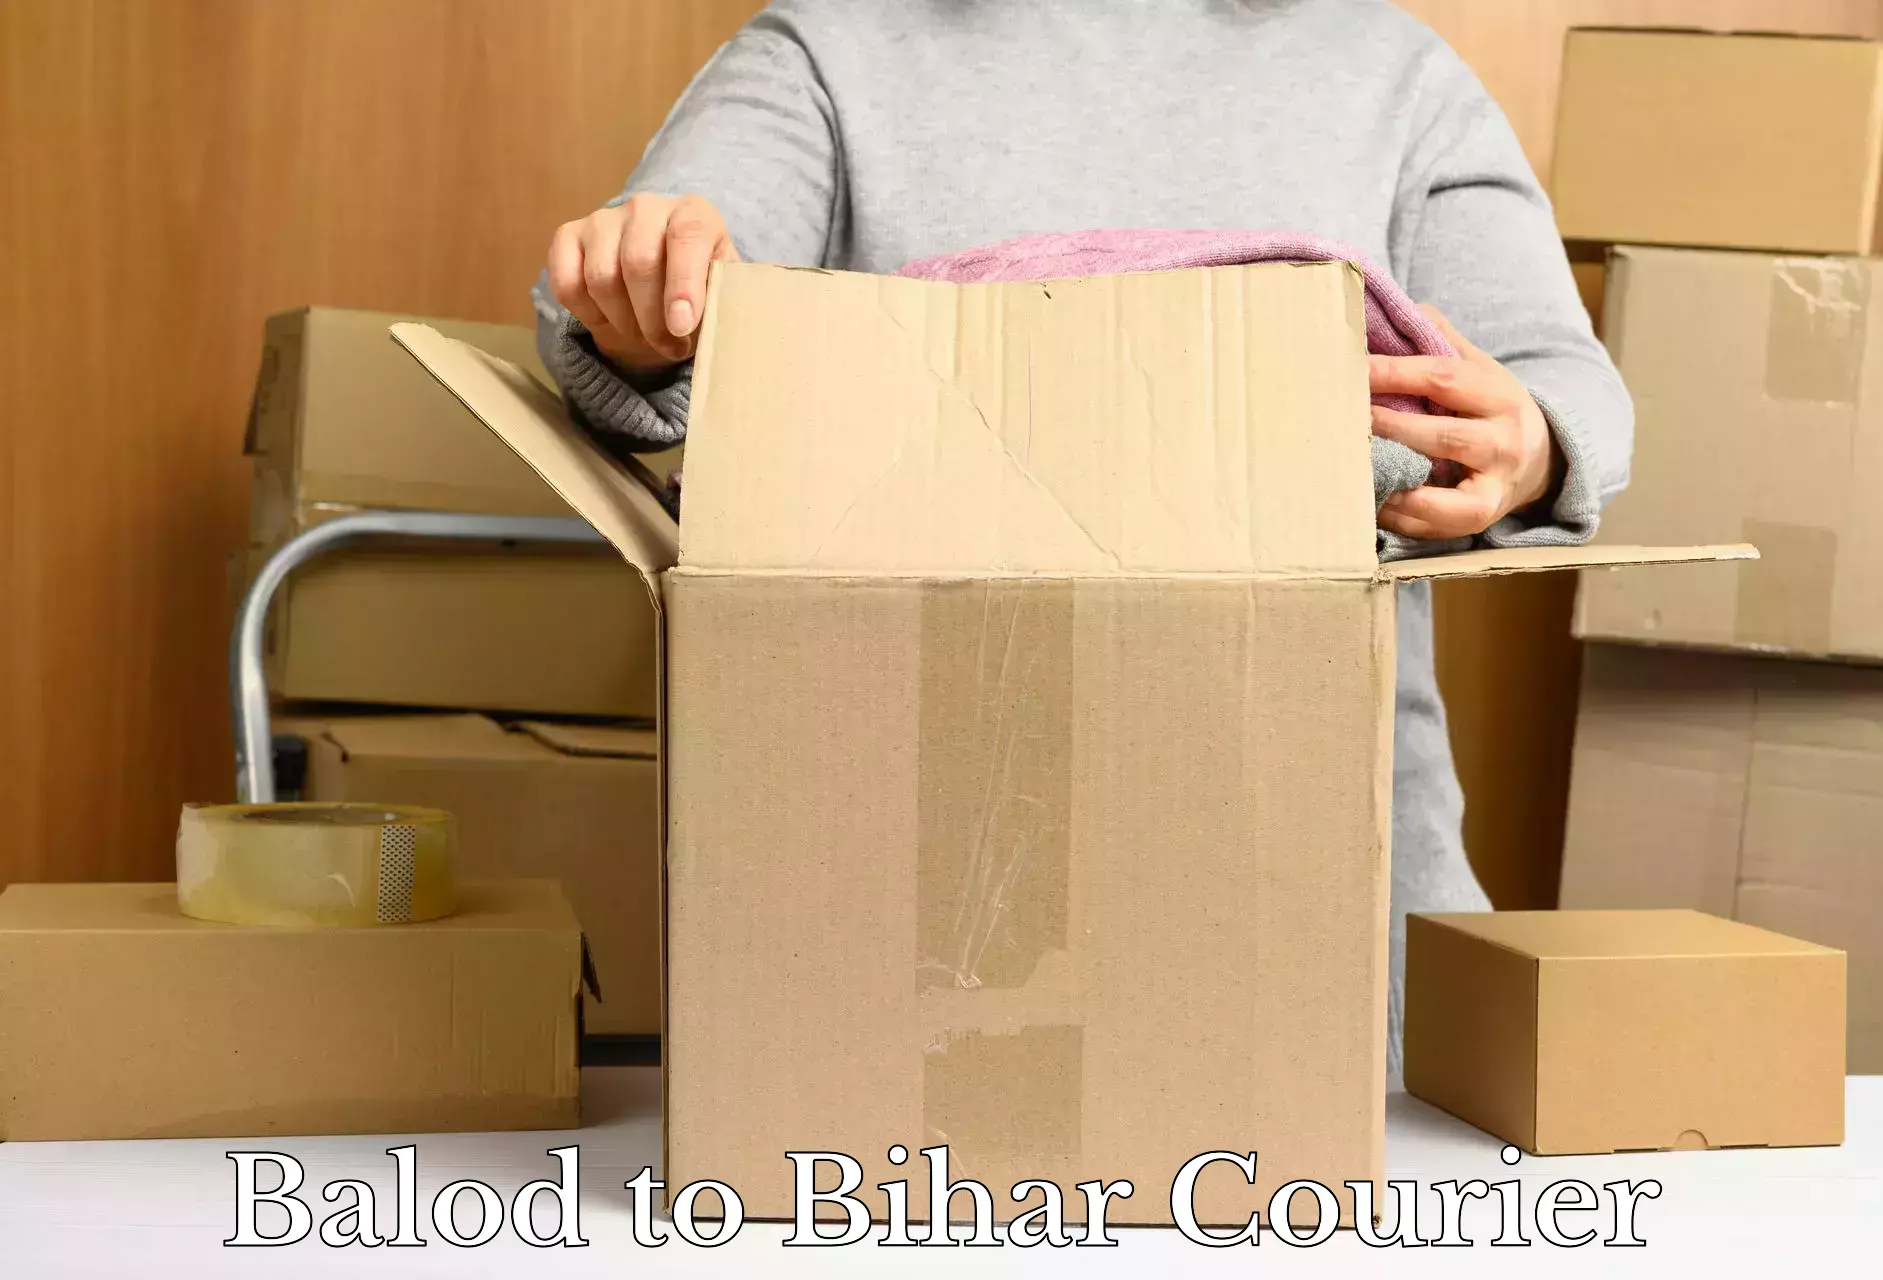 Full-service household moving Balod to Bihar